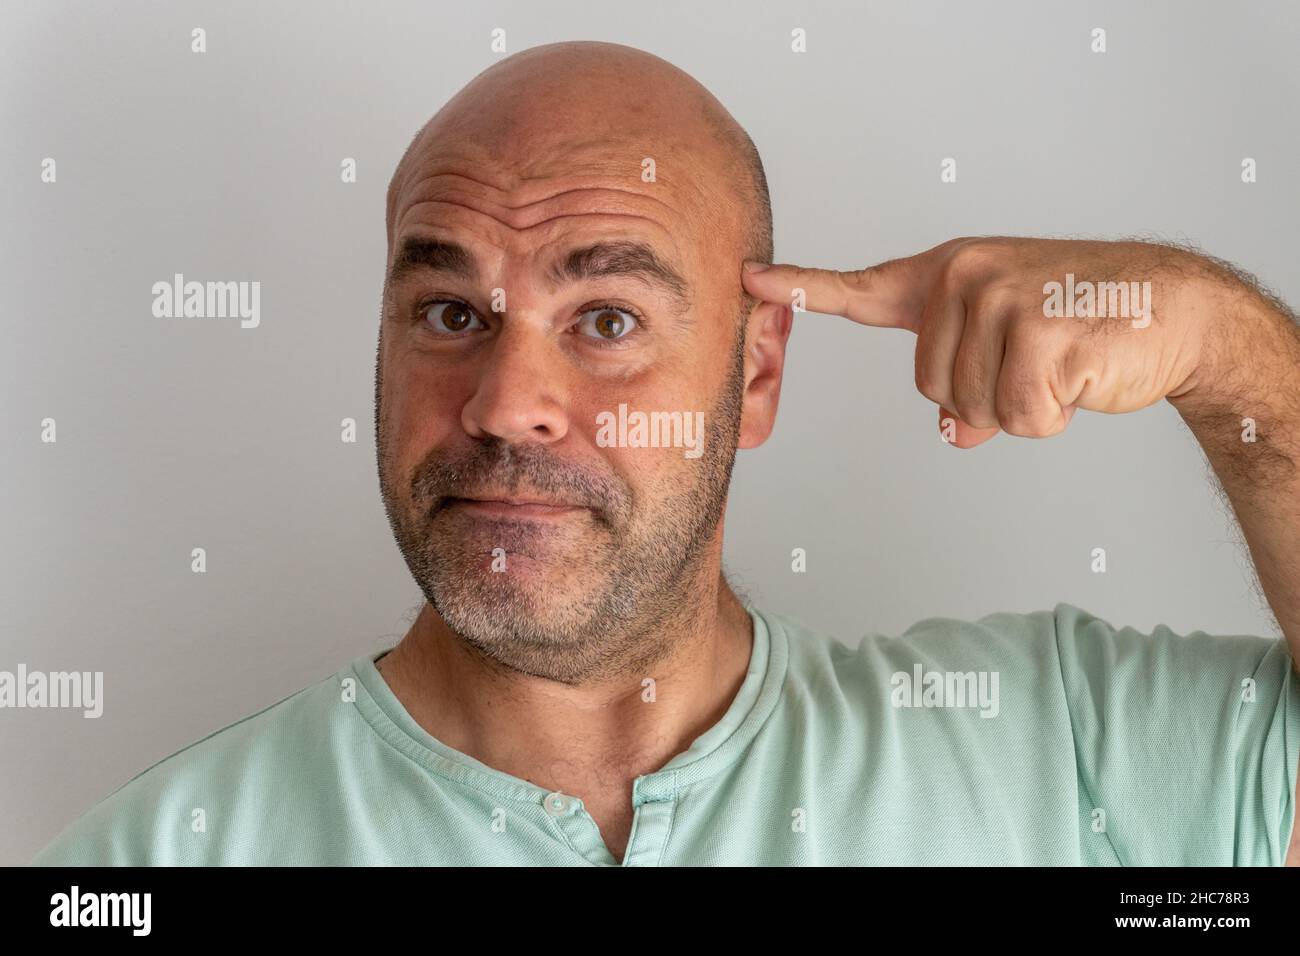 Gros plan sur le visage d'un homme caucasien à barbe chauve, en faisant des gestes et en accusant avec l'index Banque D'Images